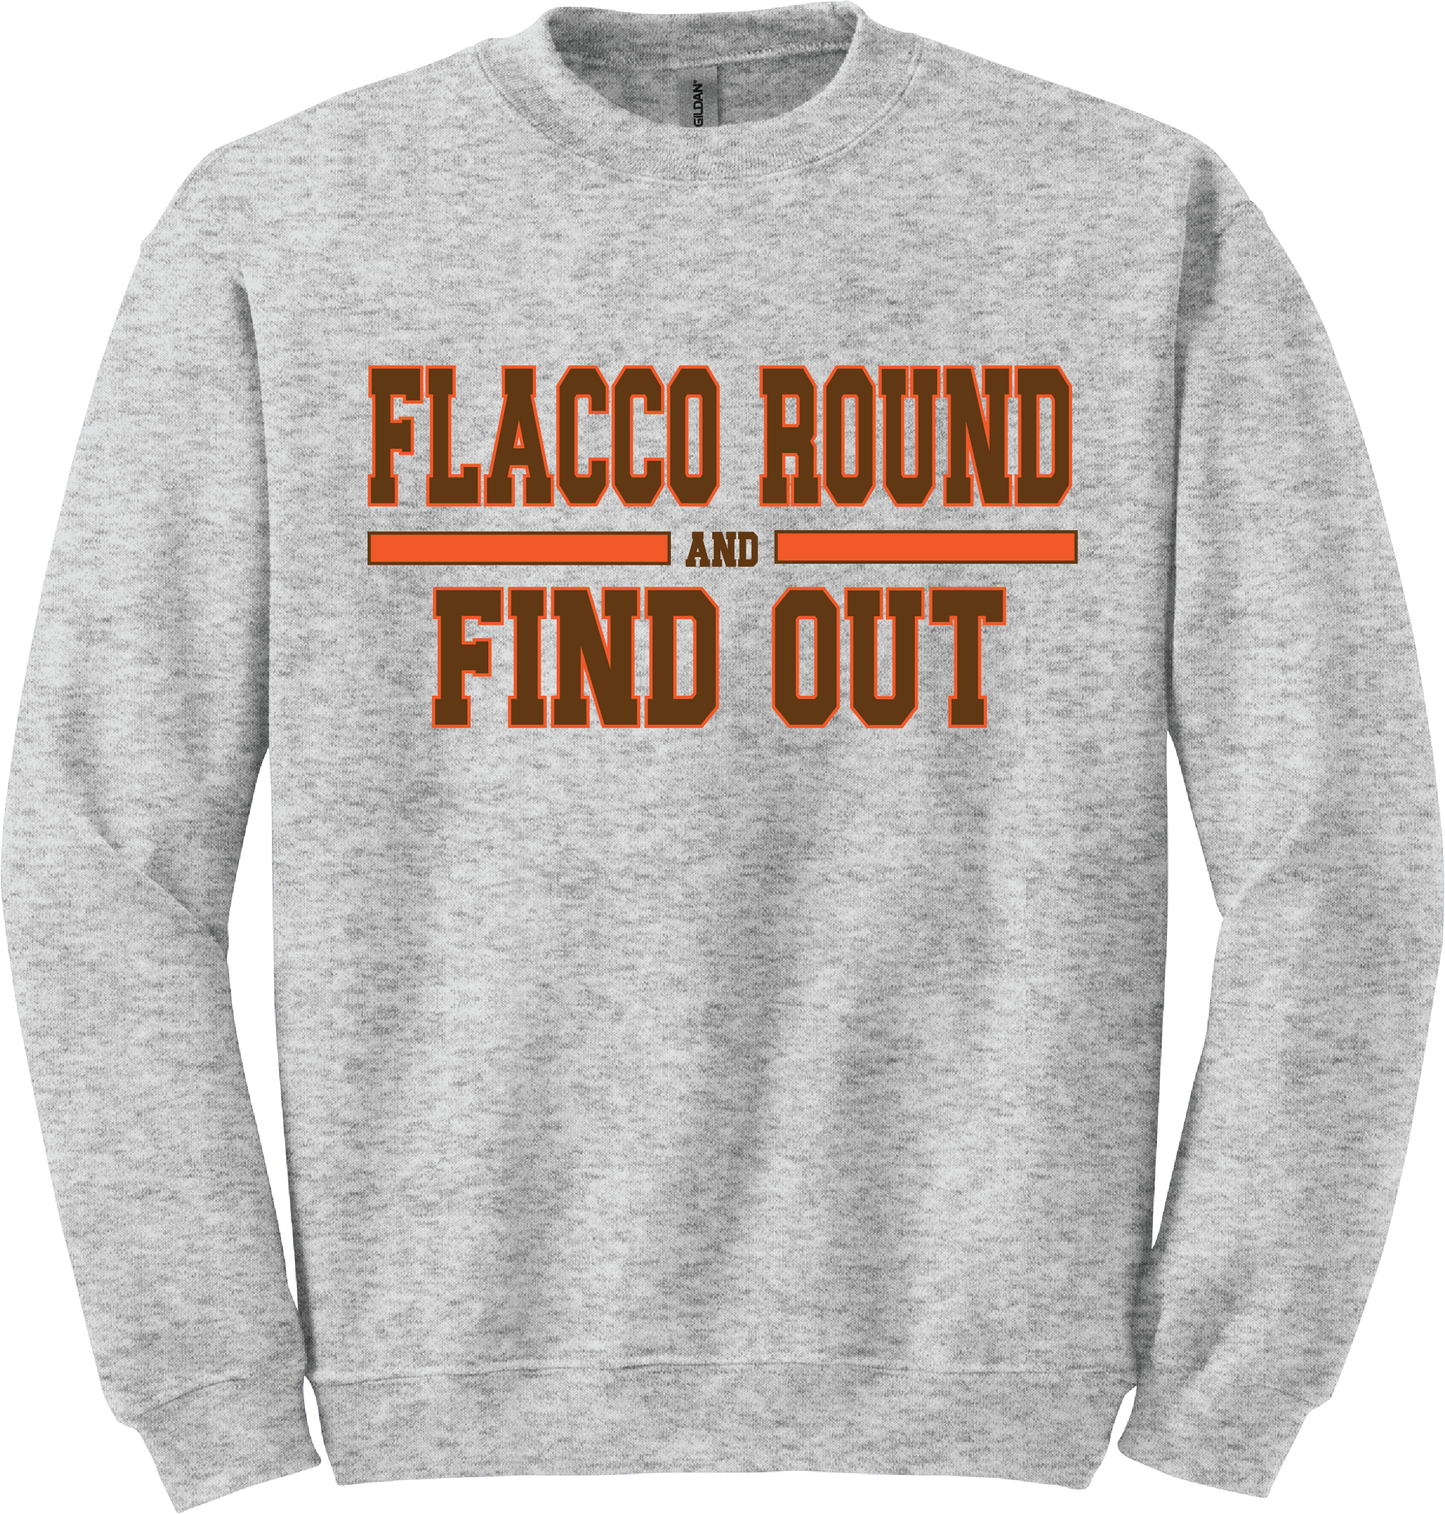 Flacco Round Crew